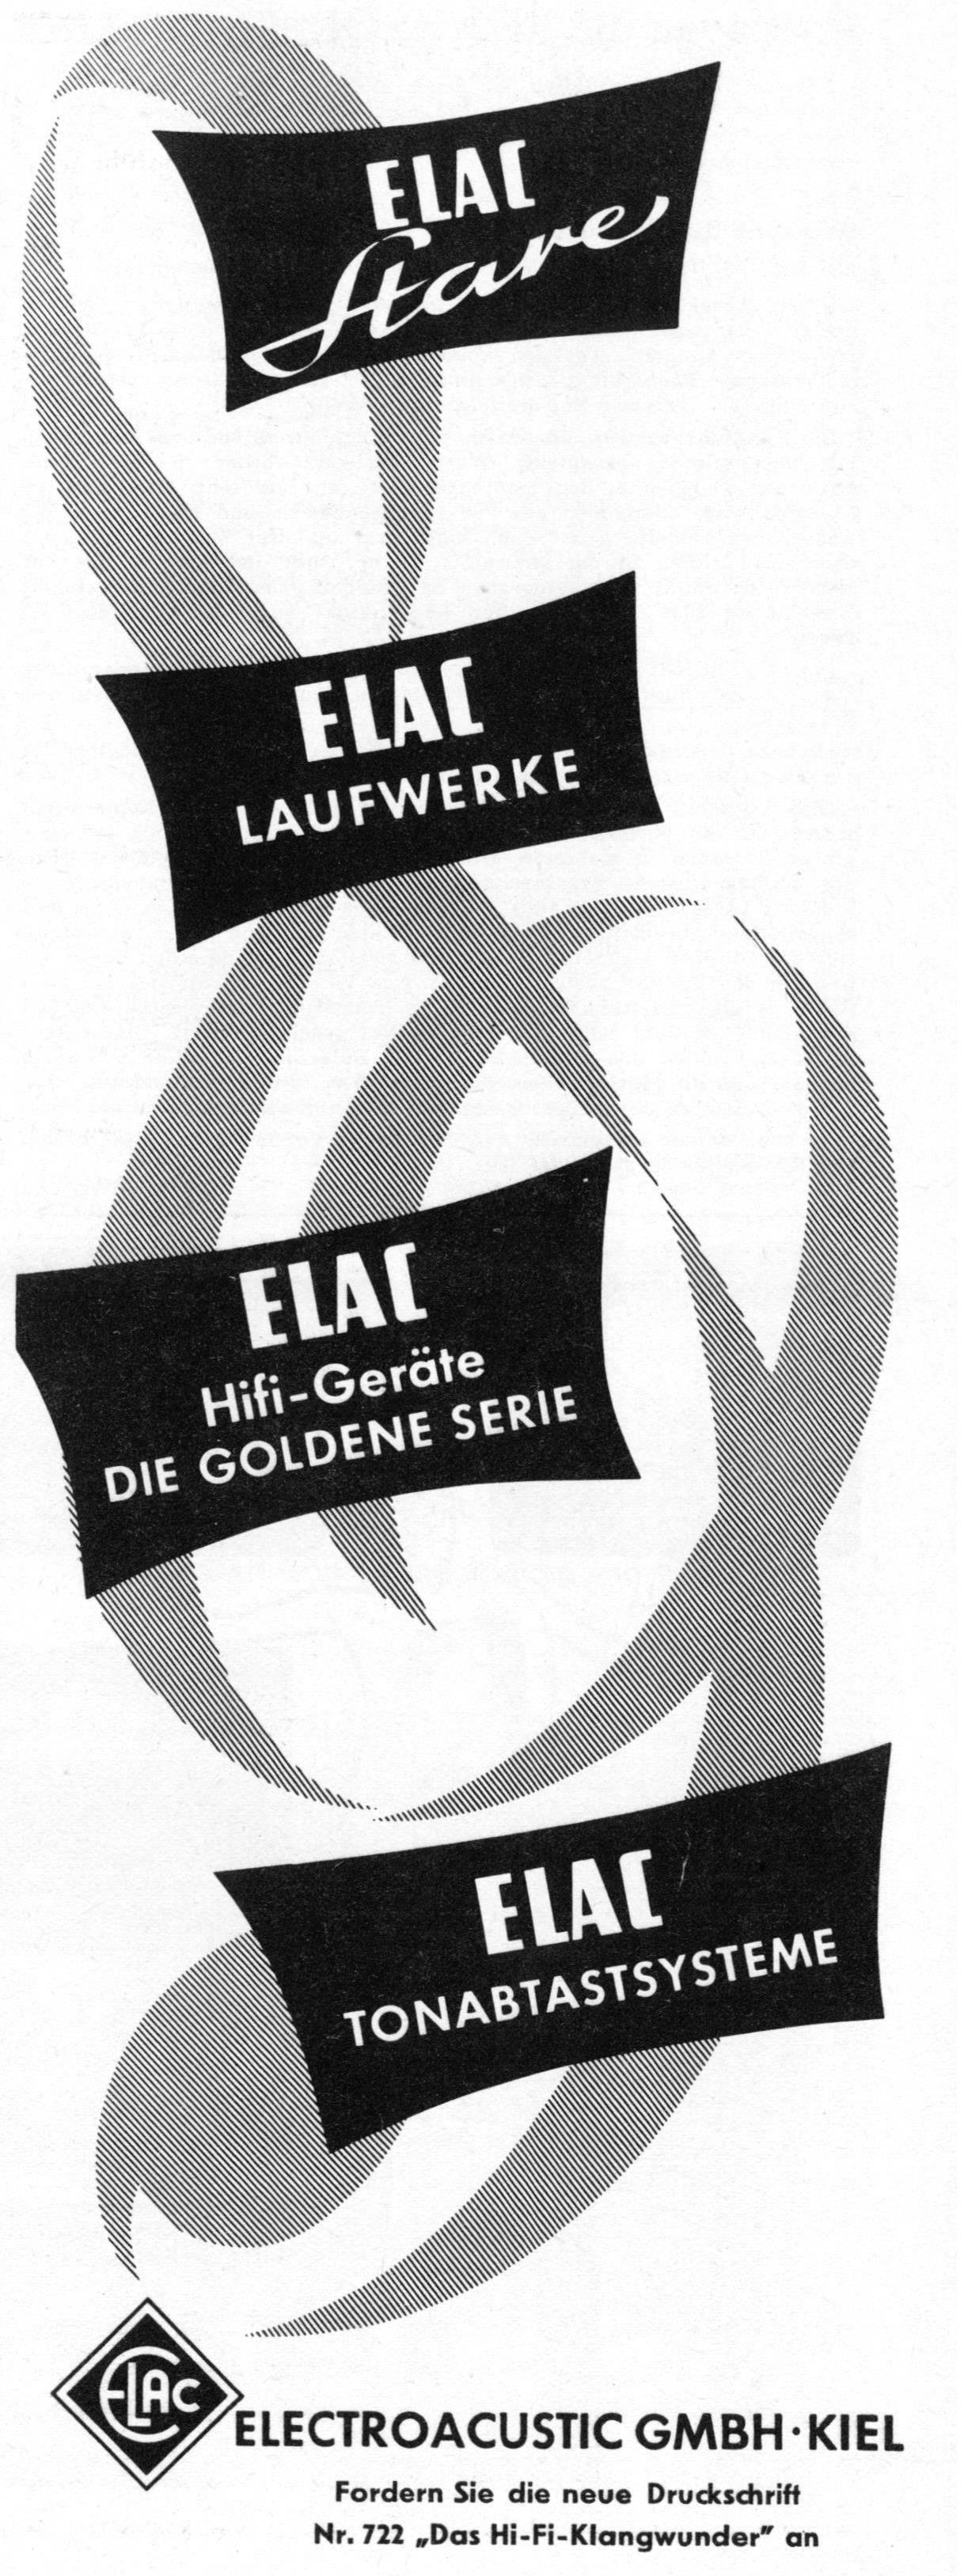 Elac 1957 02.jpg